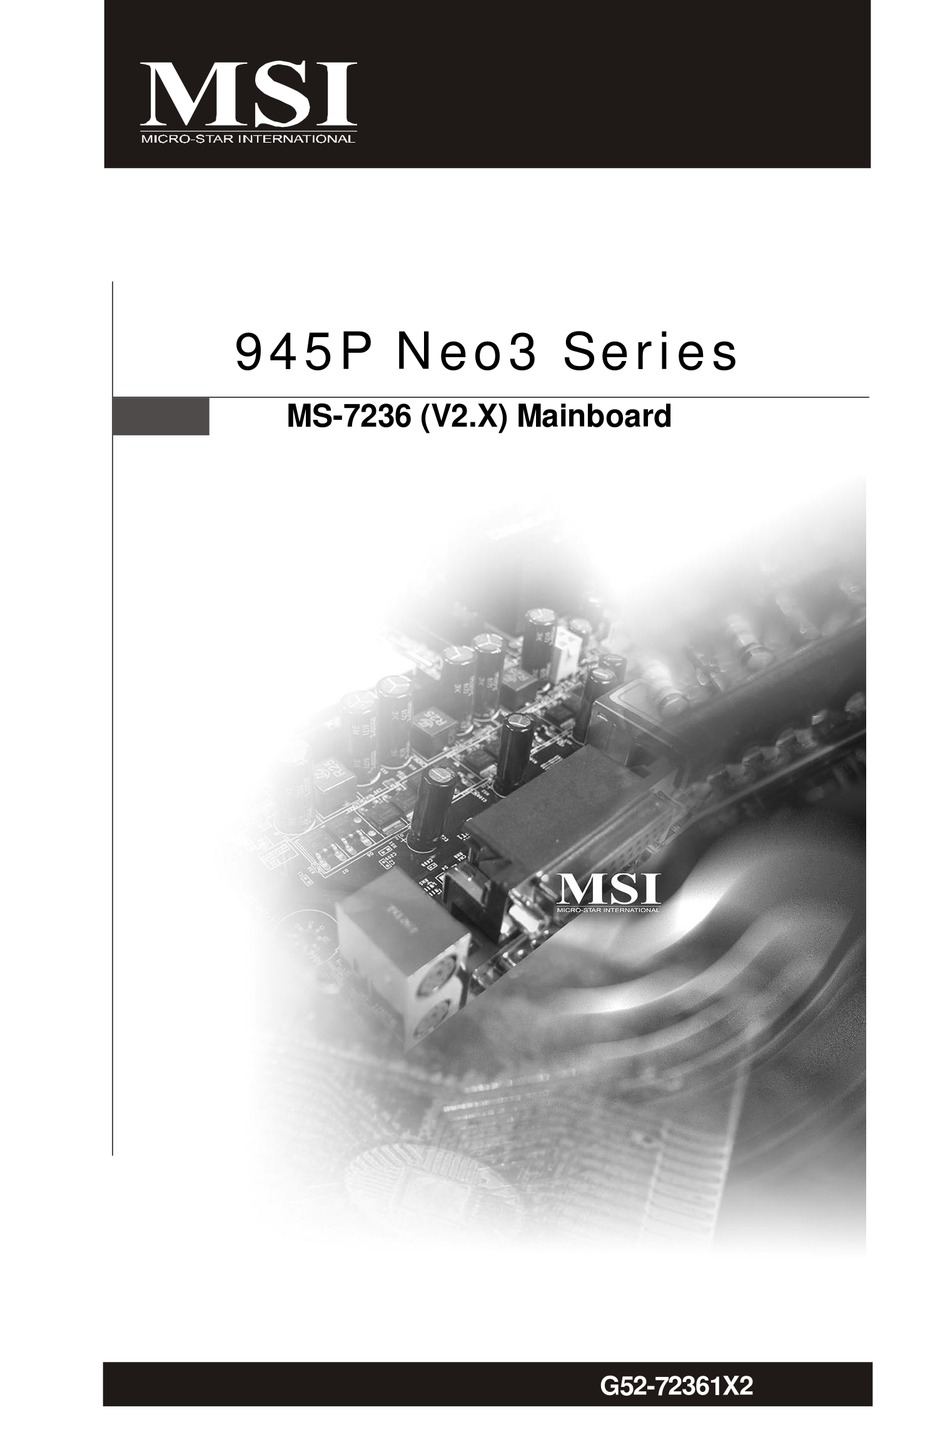 msi ms 7529 ver 1.1 motherboard manual pdf